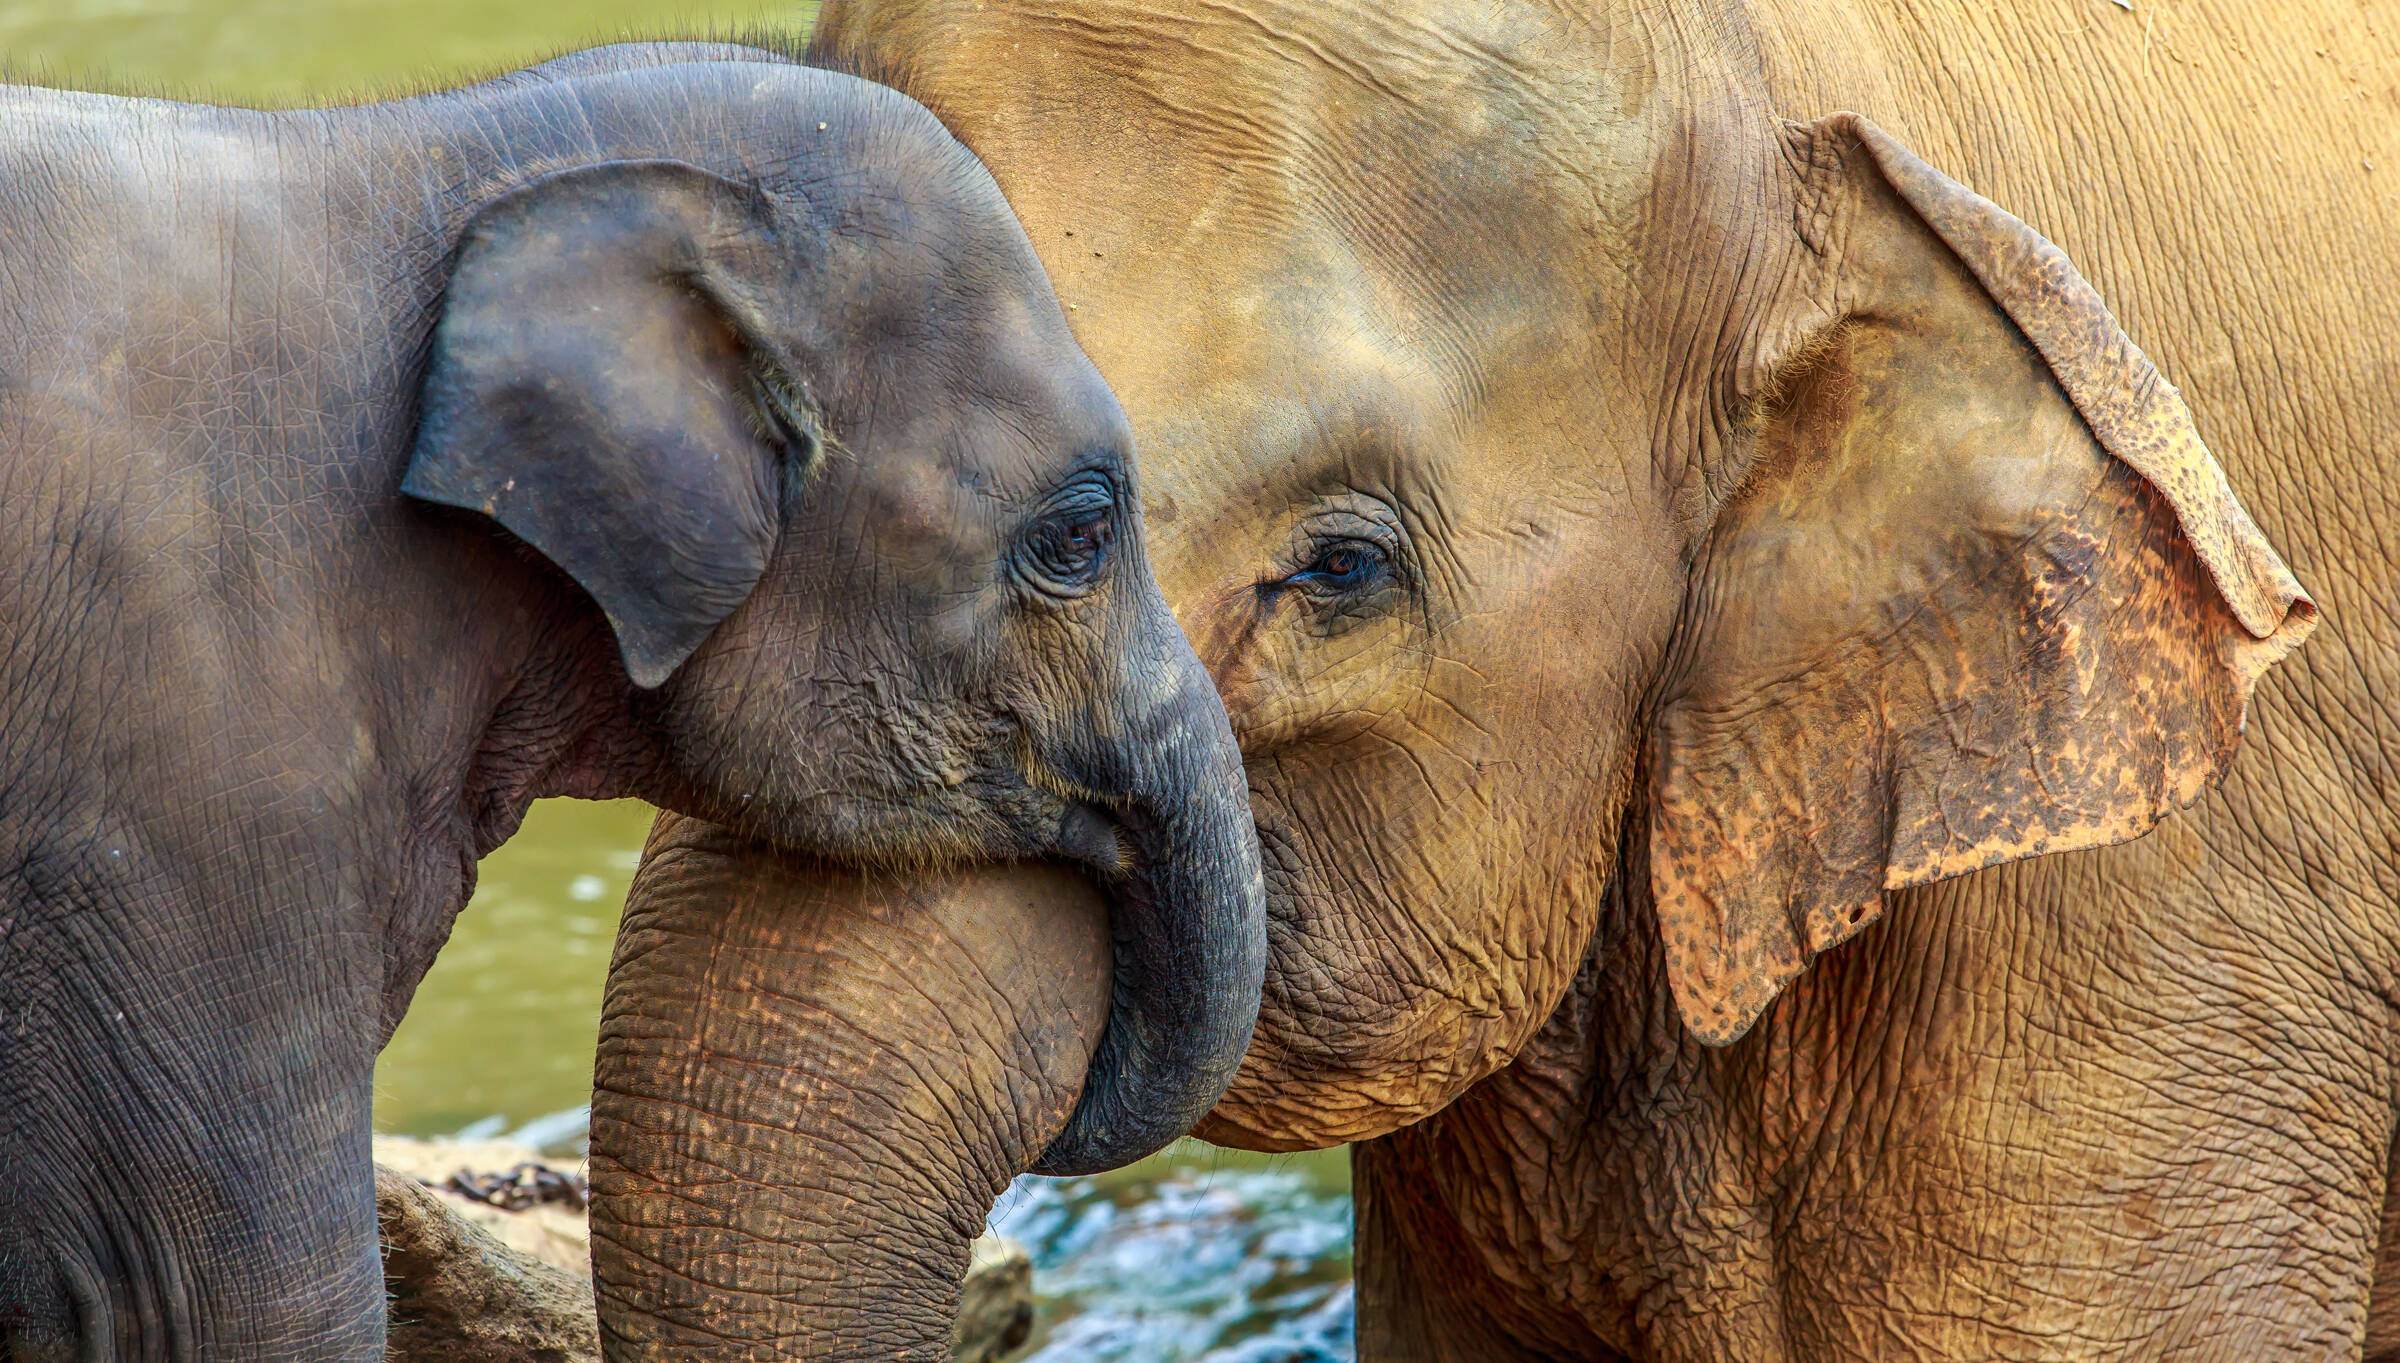 Kleiner Elefant und großer Elefant berühren sich sanft mit ihren Rüsseln